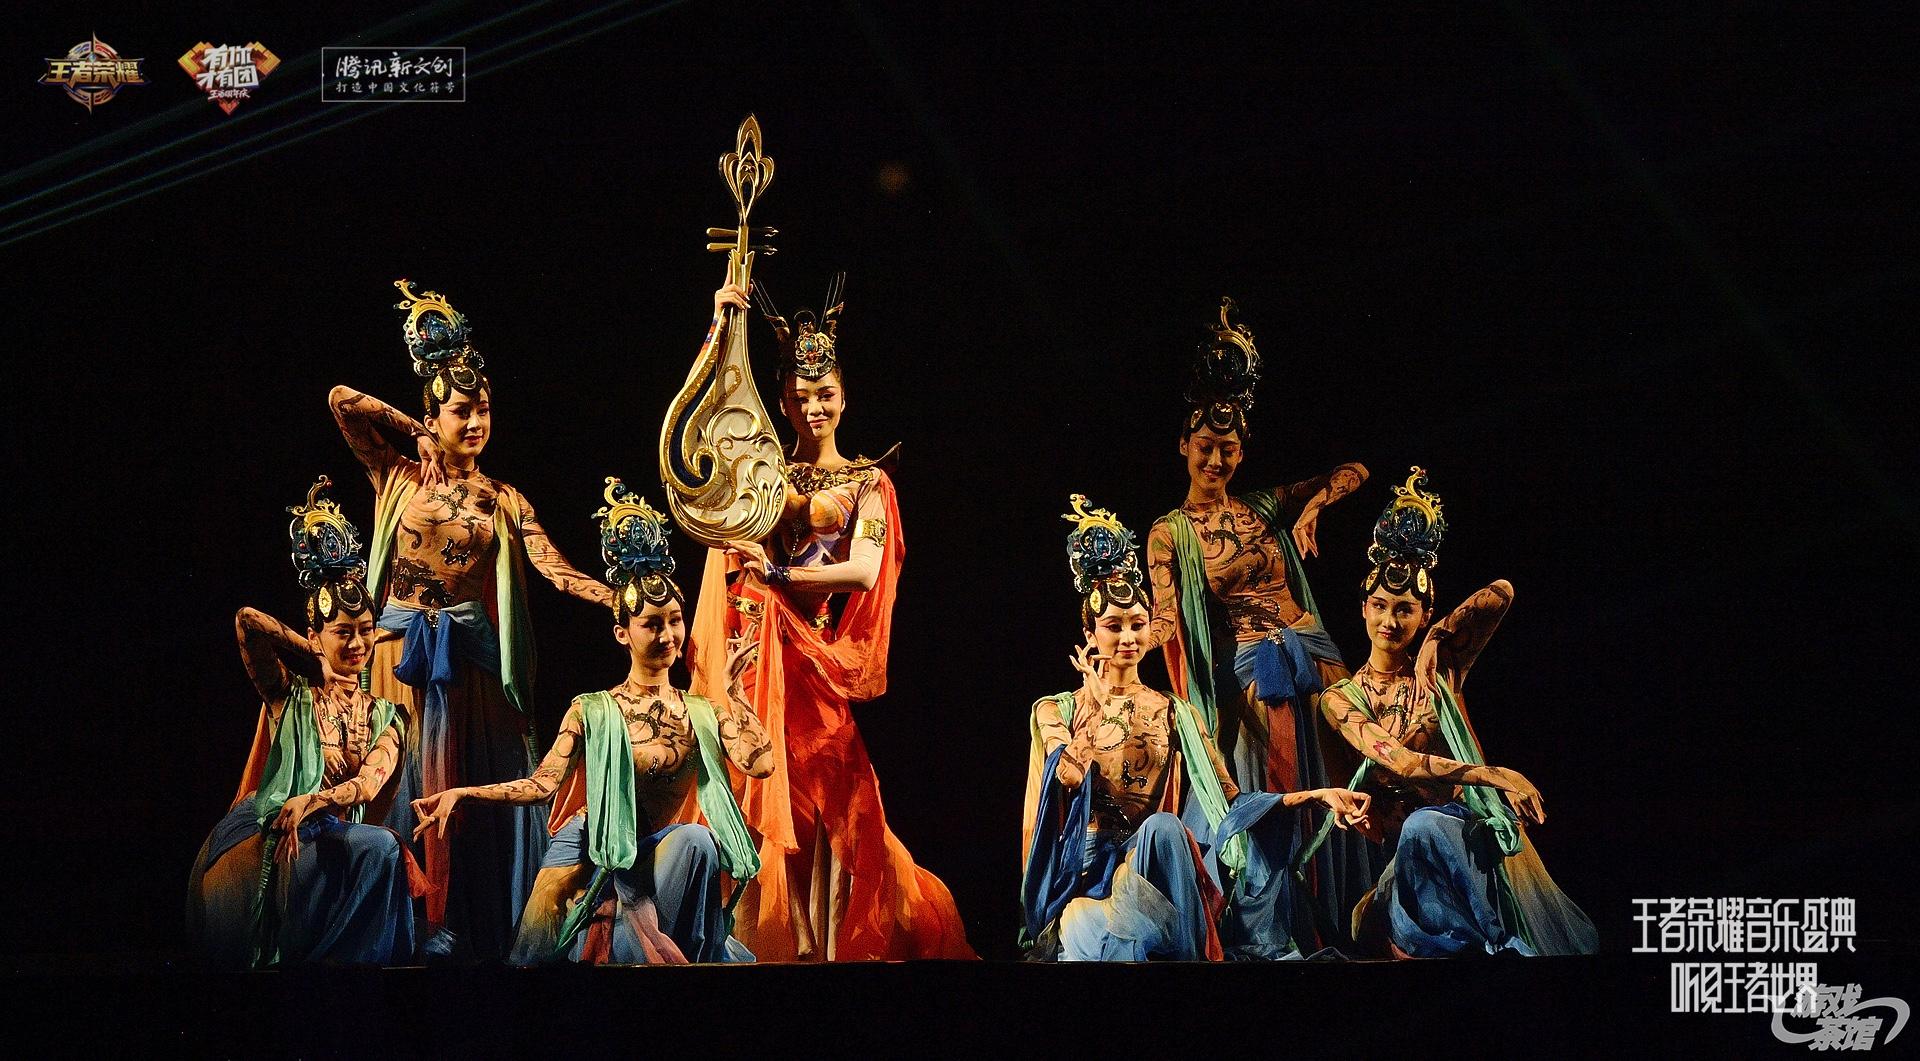 图10 以敦煌文化为主题特别编排的古典舞《遇见飞天》.jpeg